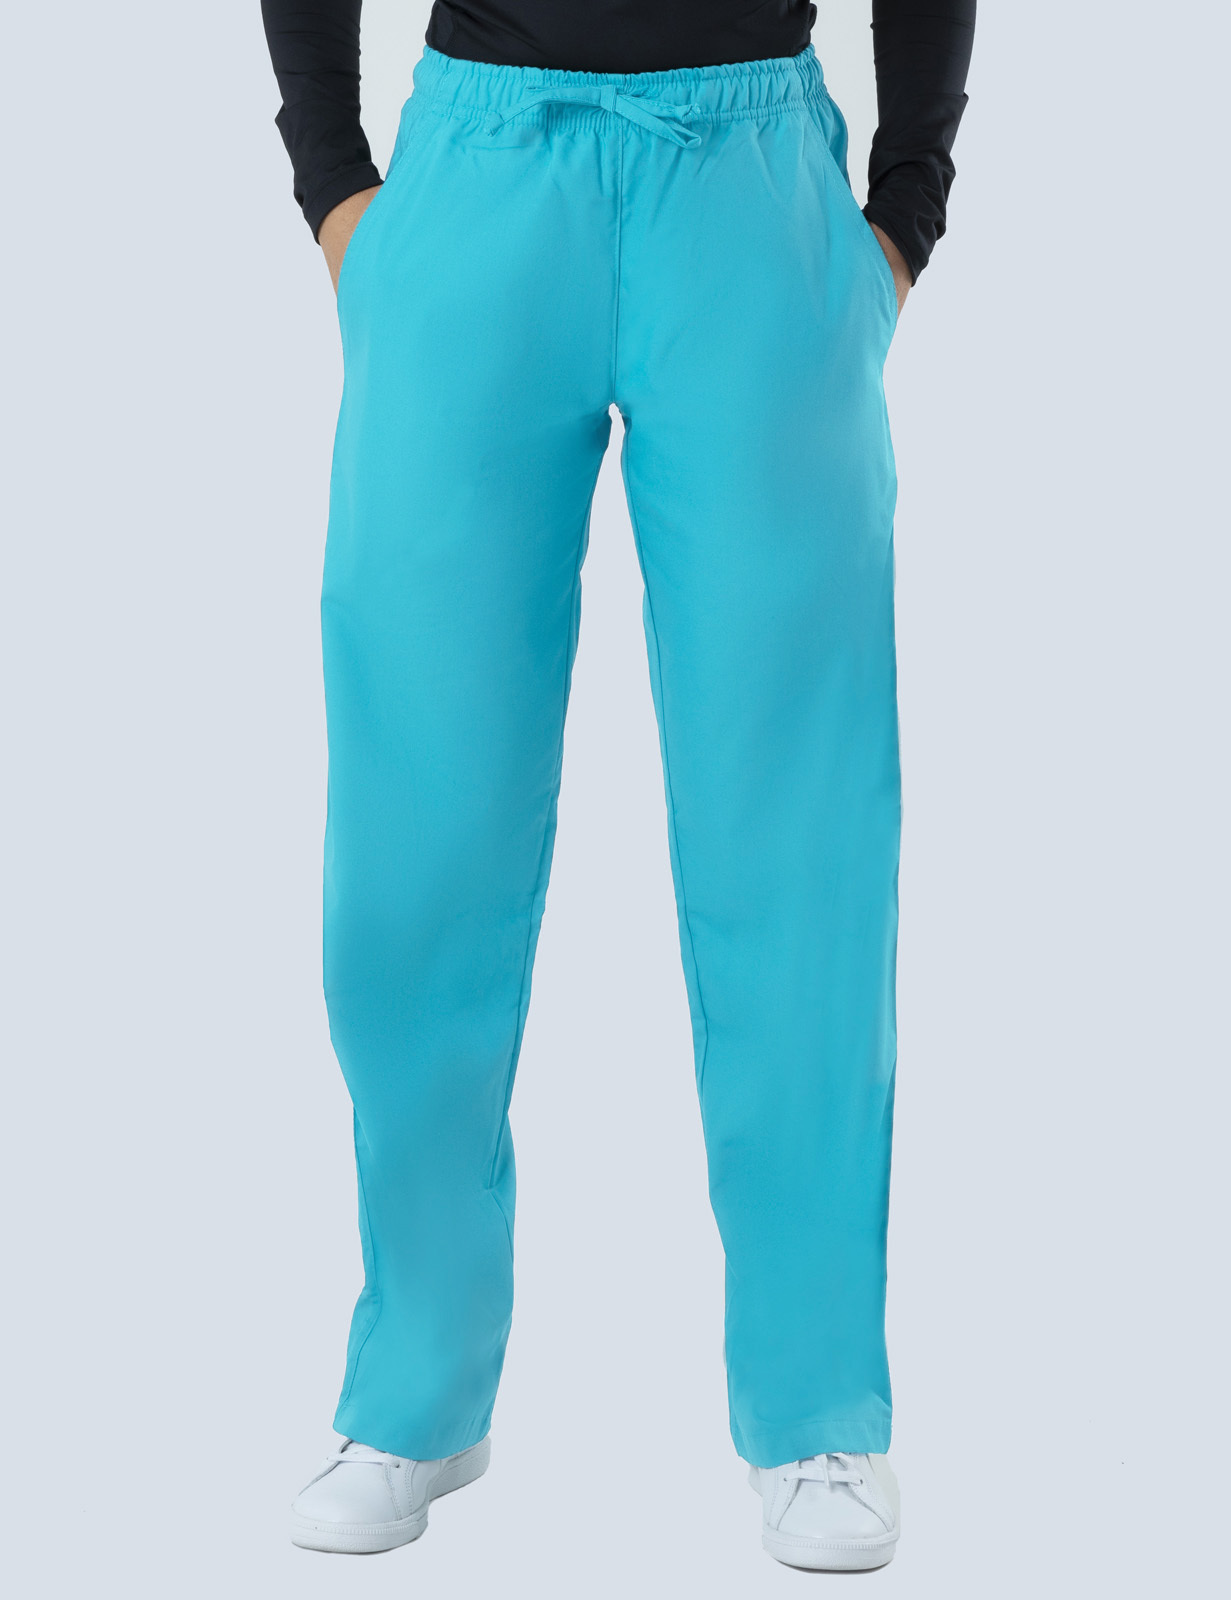 Women's Regular Cut Pants - Aqua - 5x Large